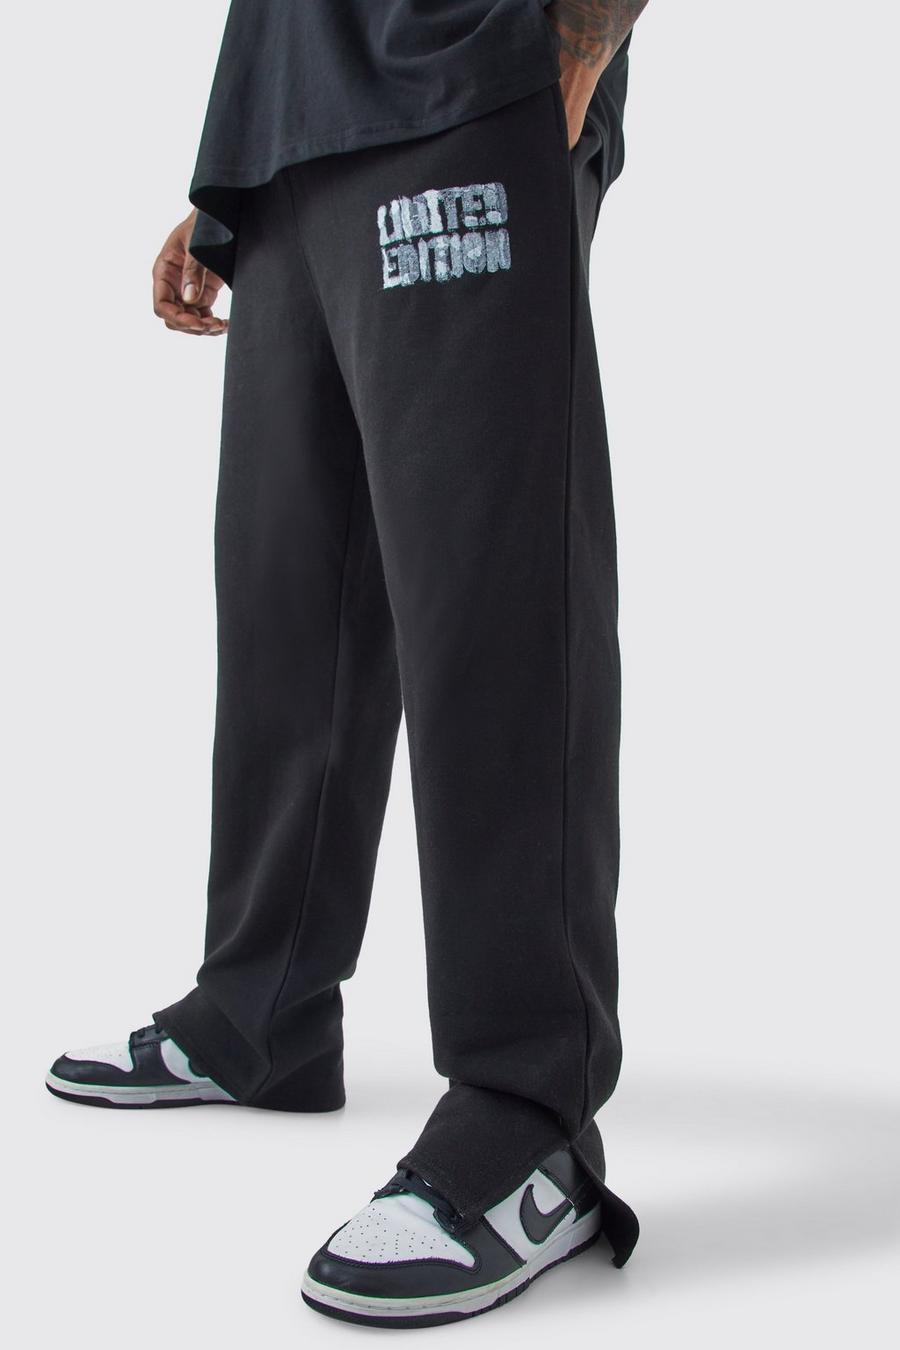 Pantalón deportivo Plus negro Limited Edition con abertura en el bajo, Black